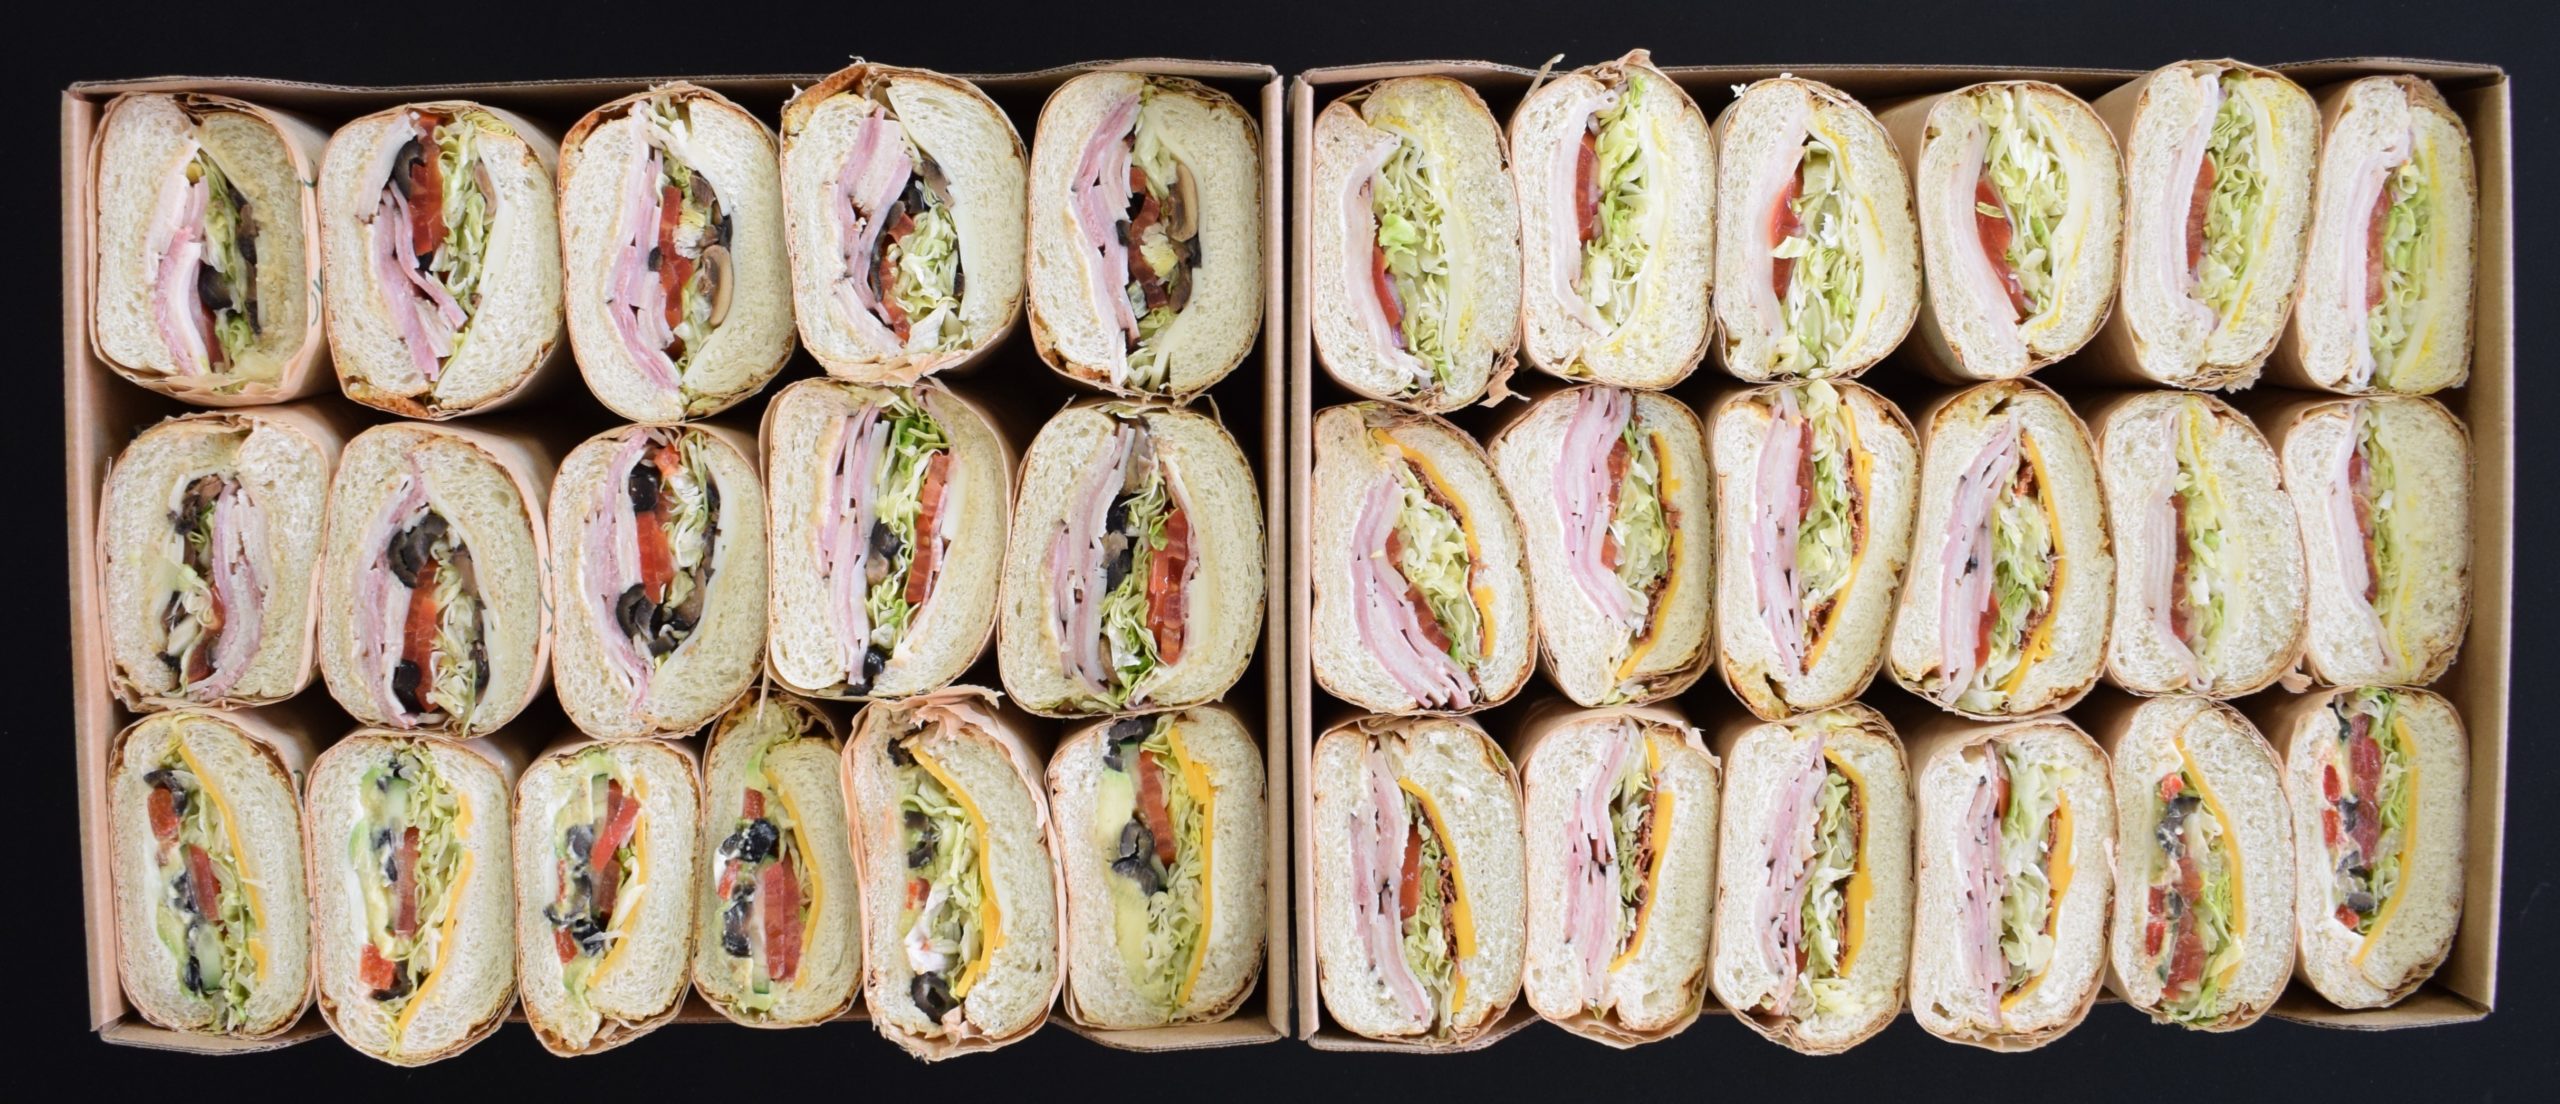 sandwich trays